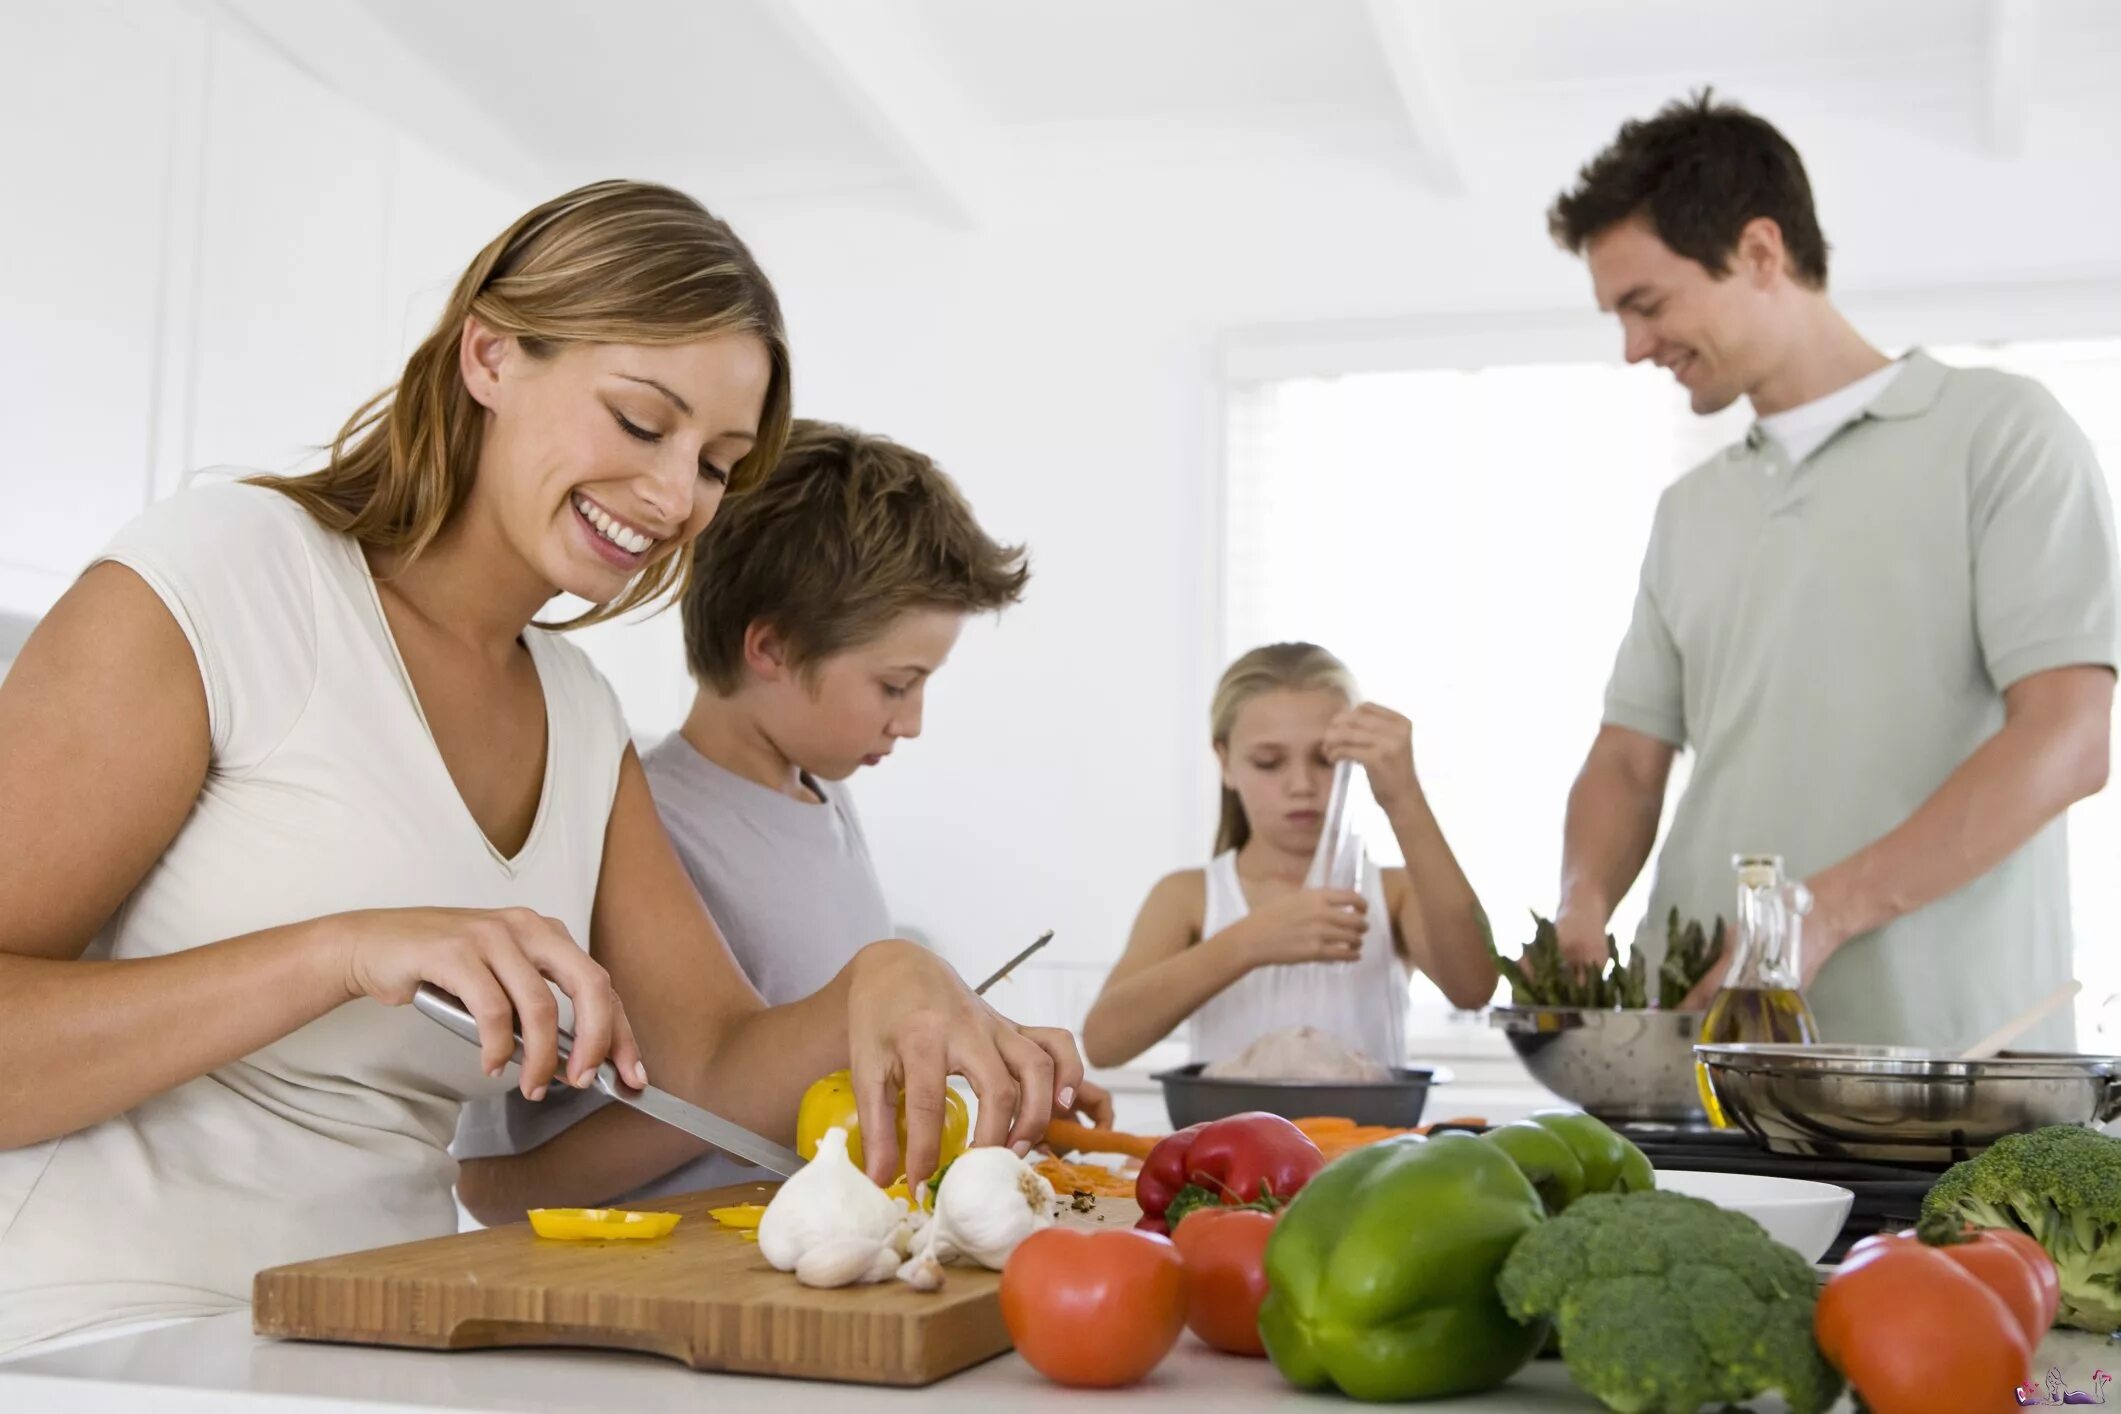 Бытовых забот. Здоровый образ жизни в скиье. Здоровое питание в семье. Домашнее хозяйство. Правильное питание семья.